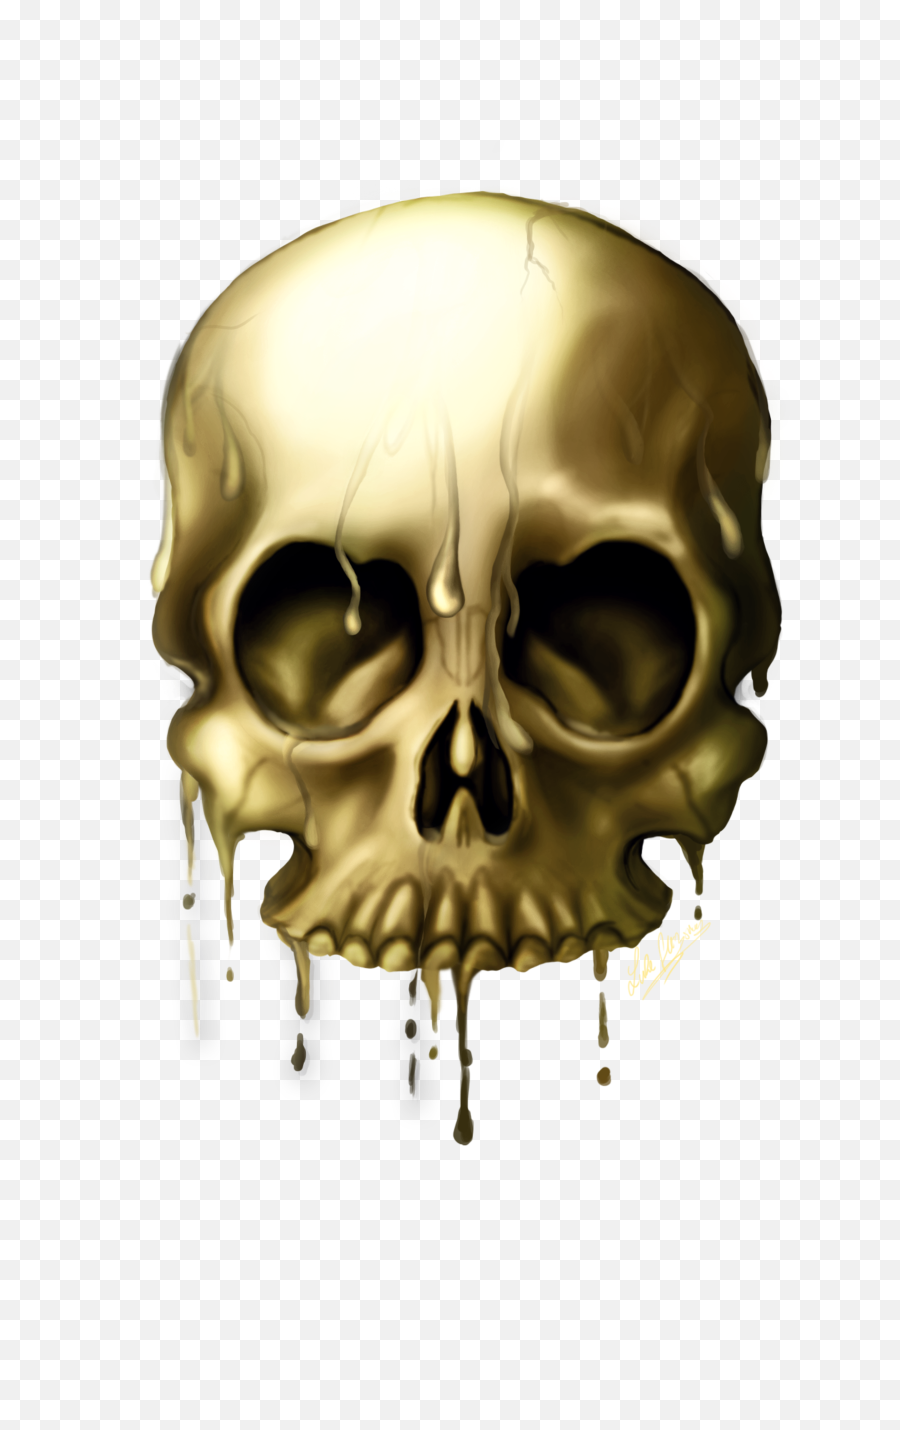 Skulls Png Image - Transparent Background Skull Transparent Png,Skeleton Png Transparent